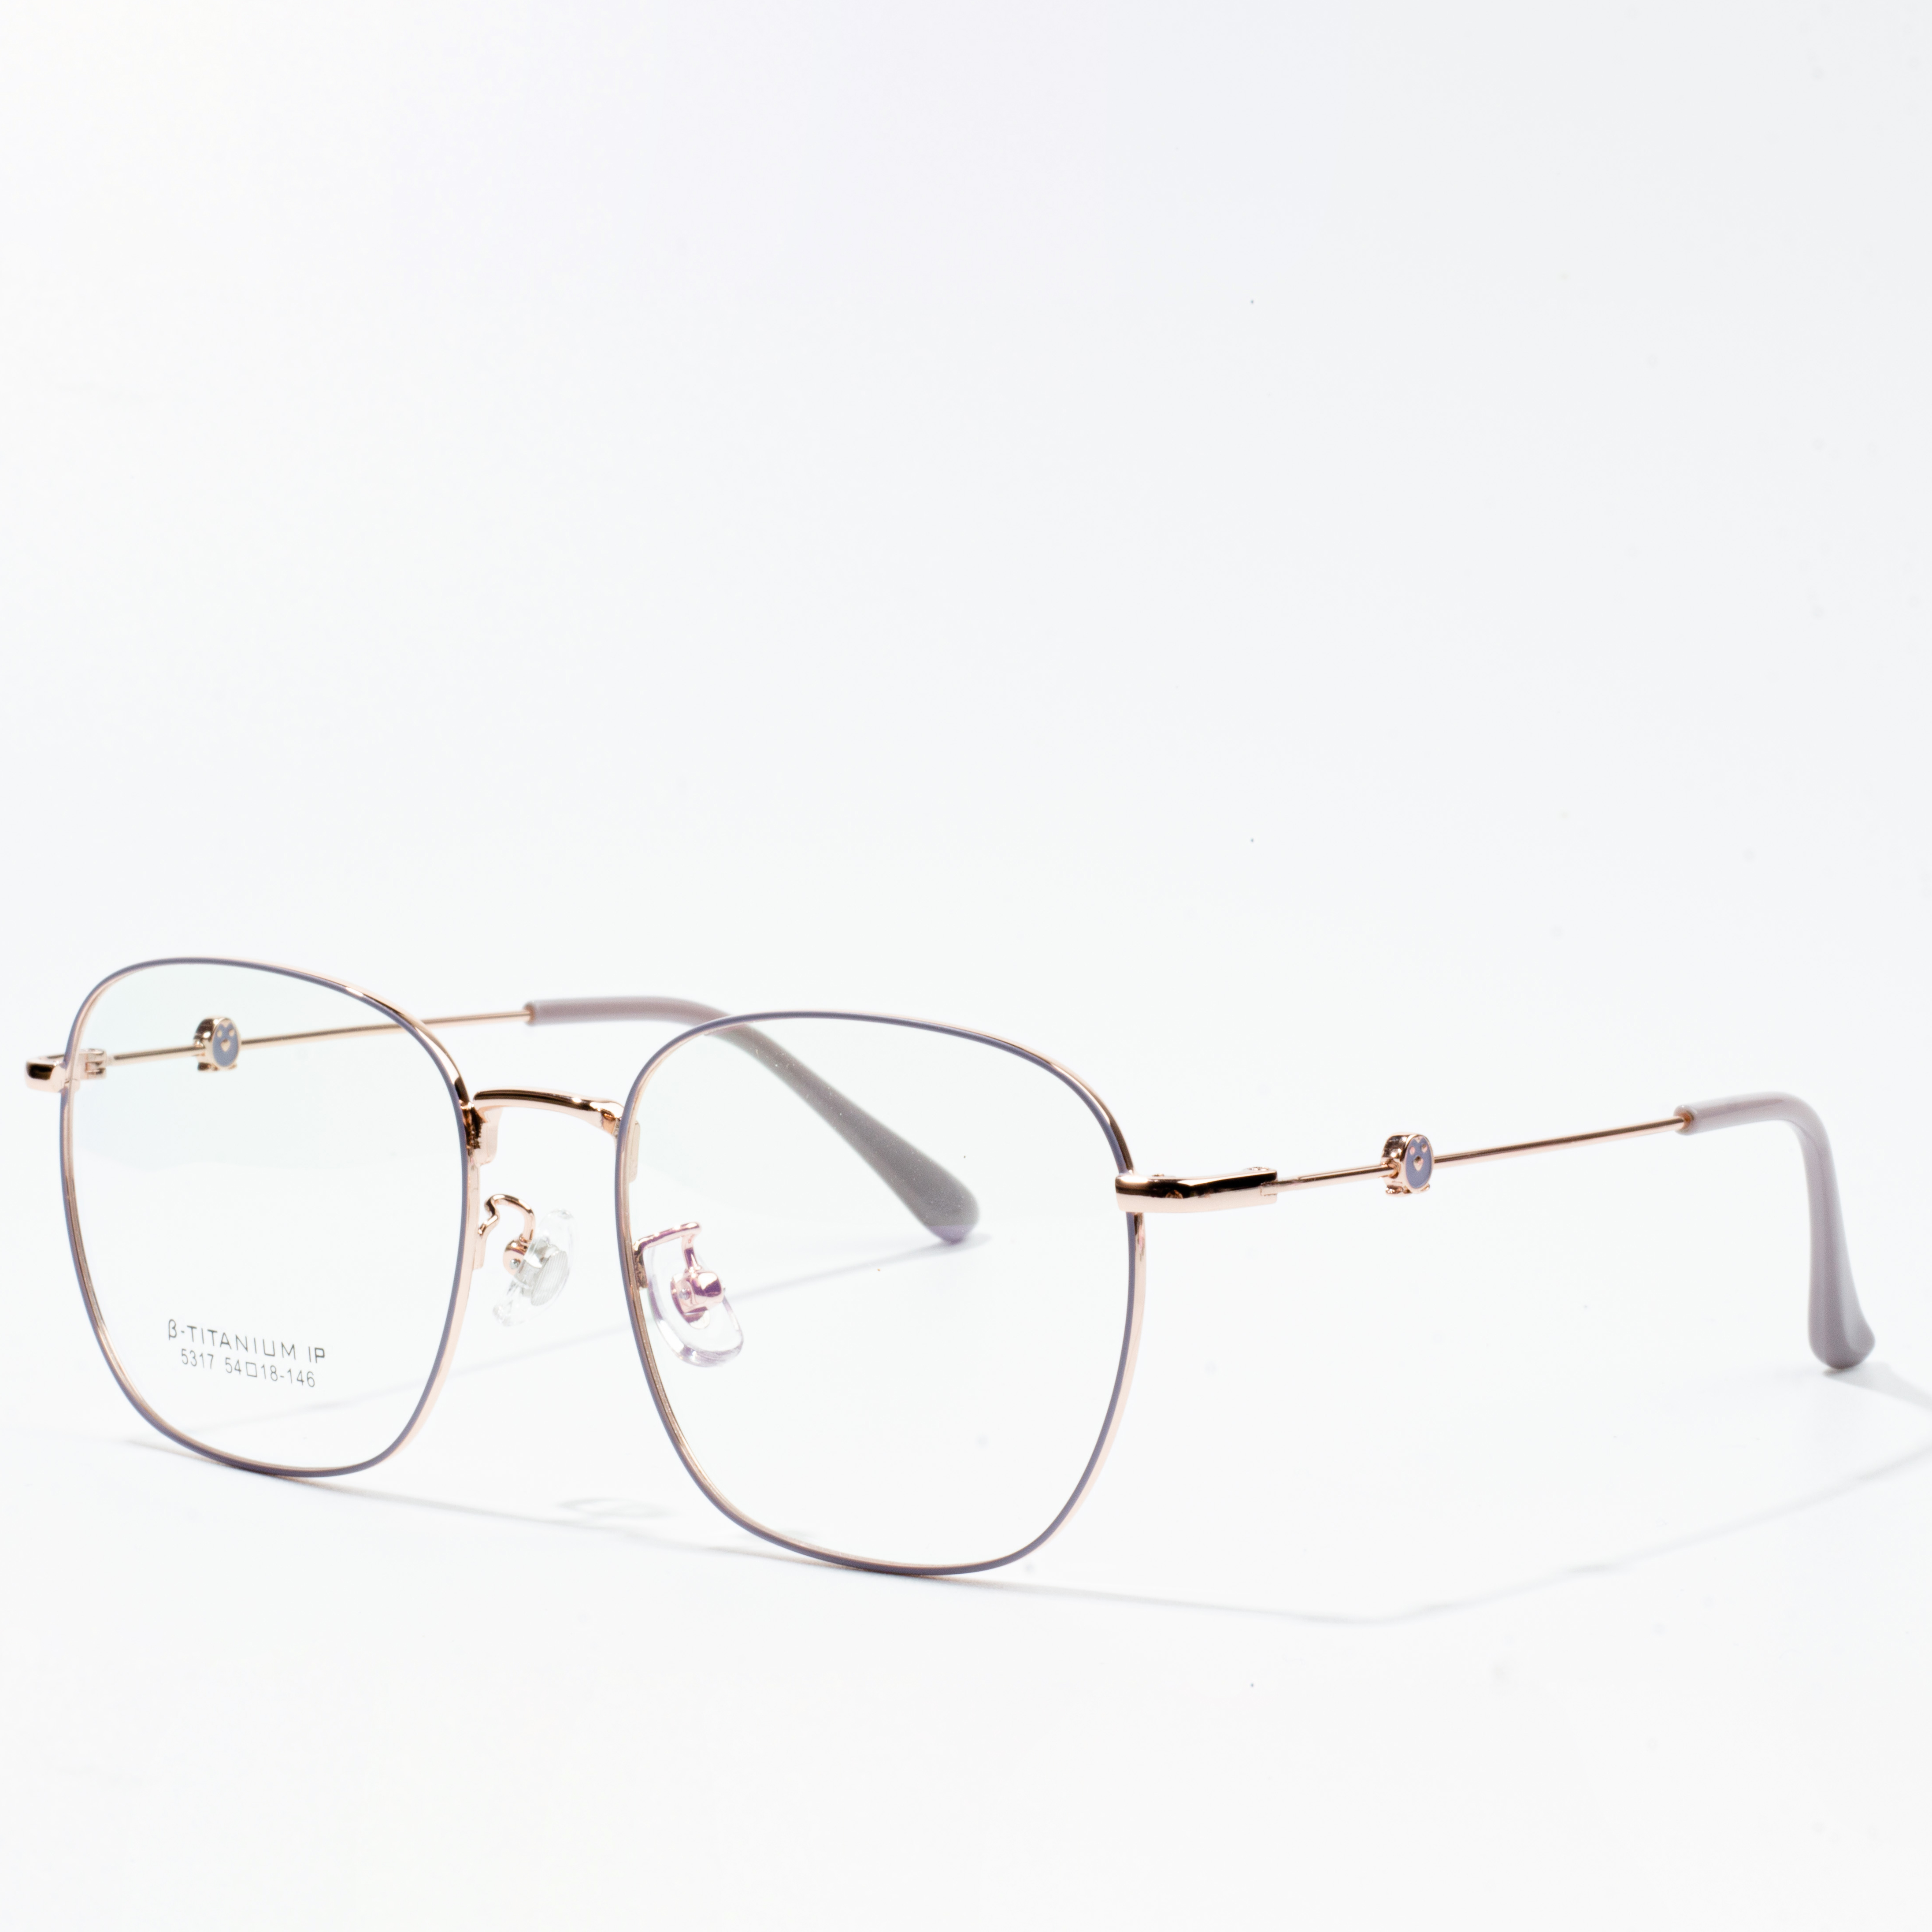 "frame kacamata titanium kab